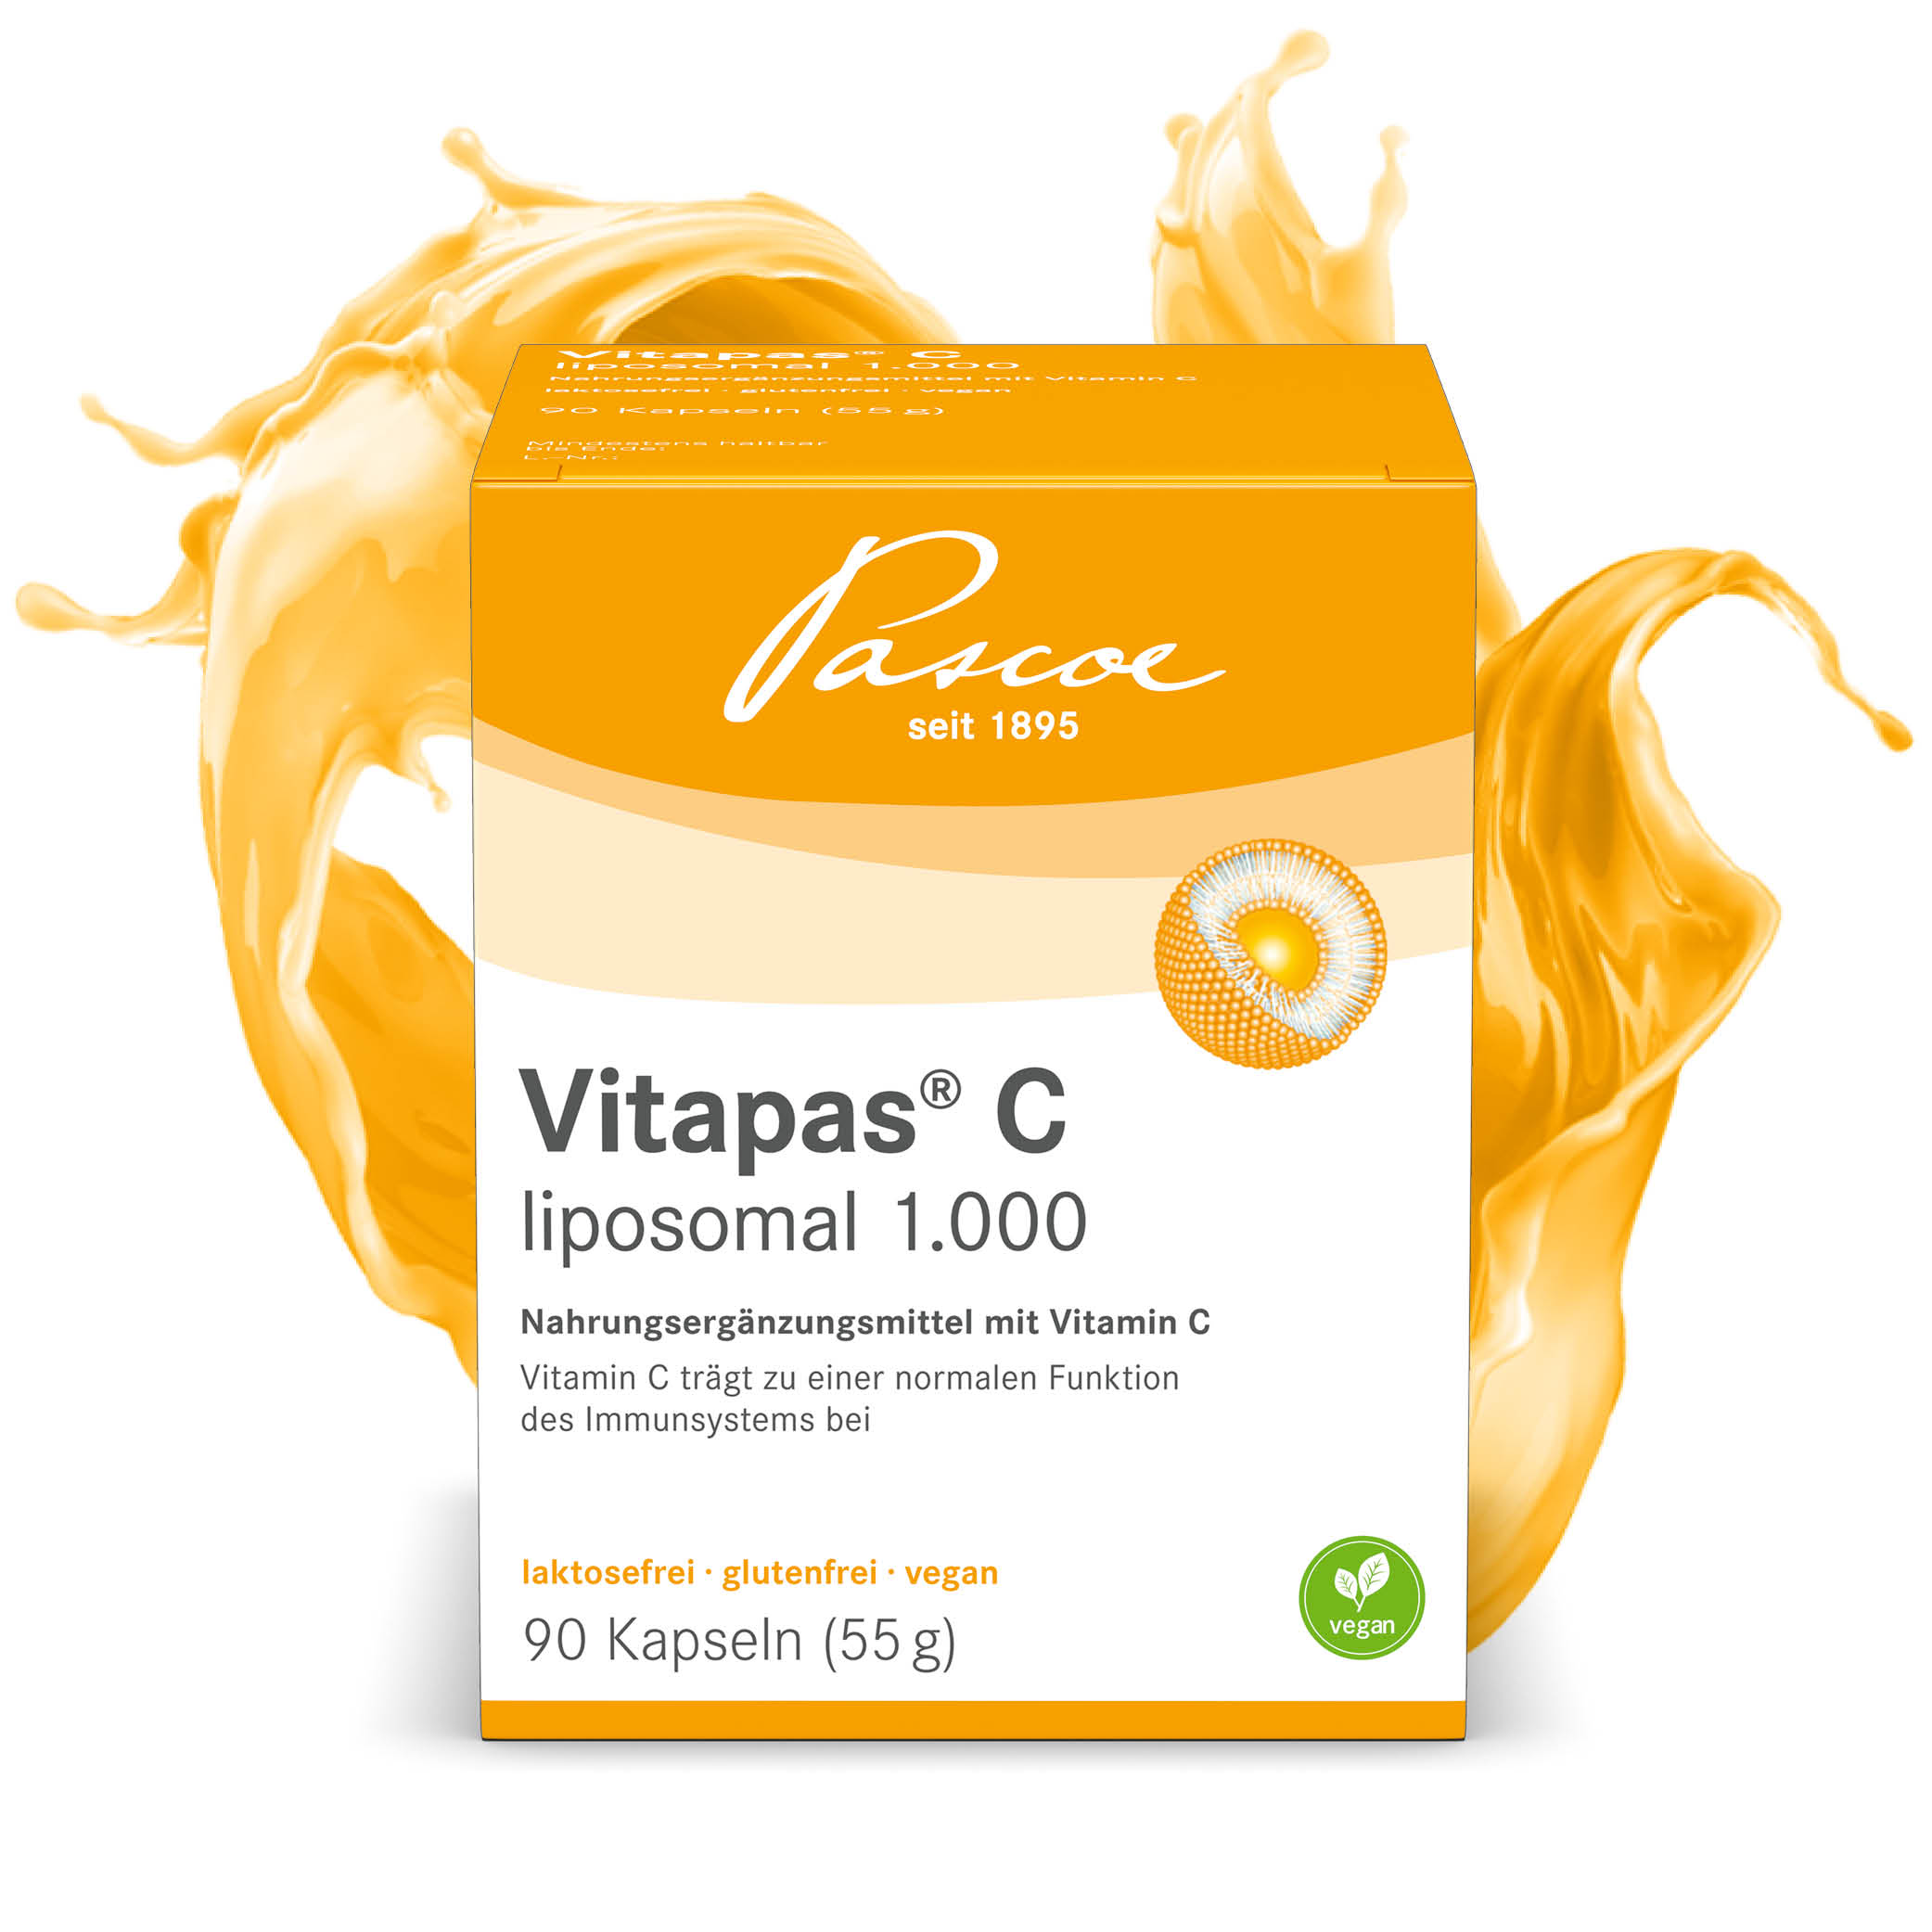 Vitapas C 1000 liposomal